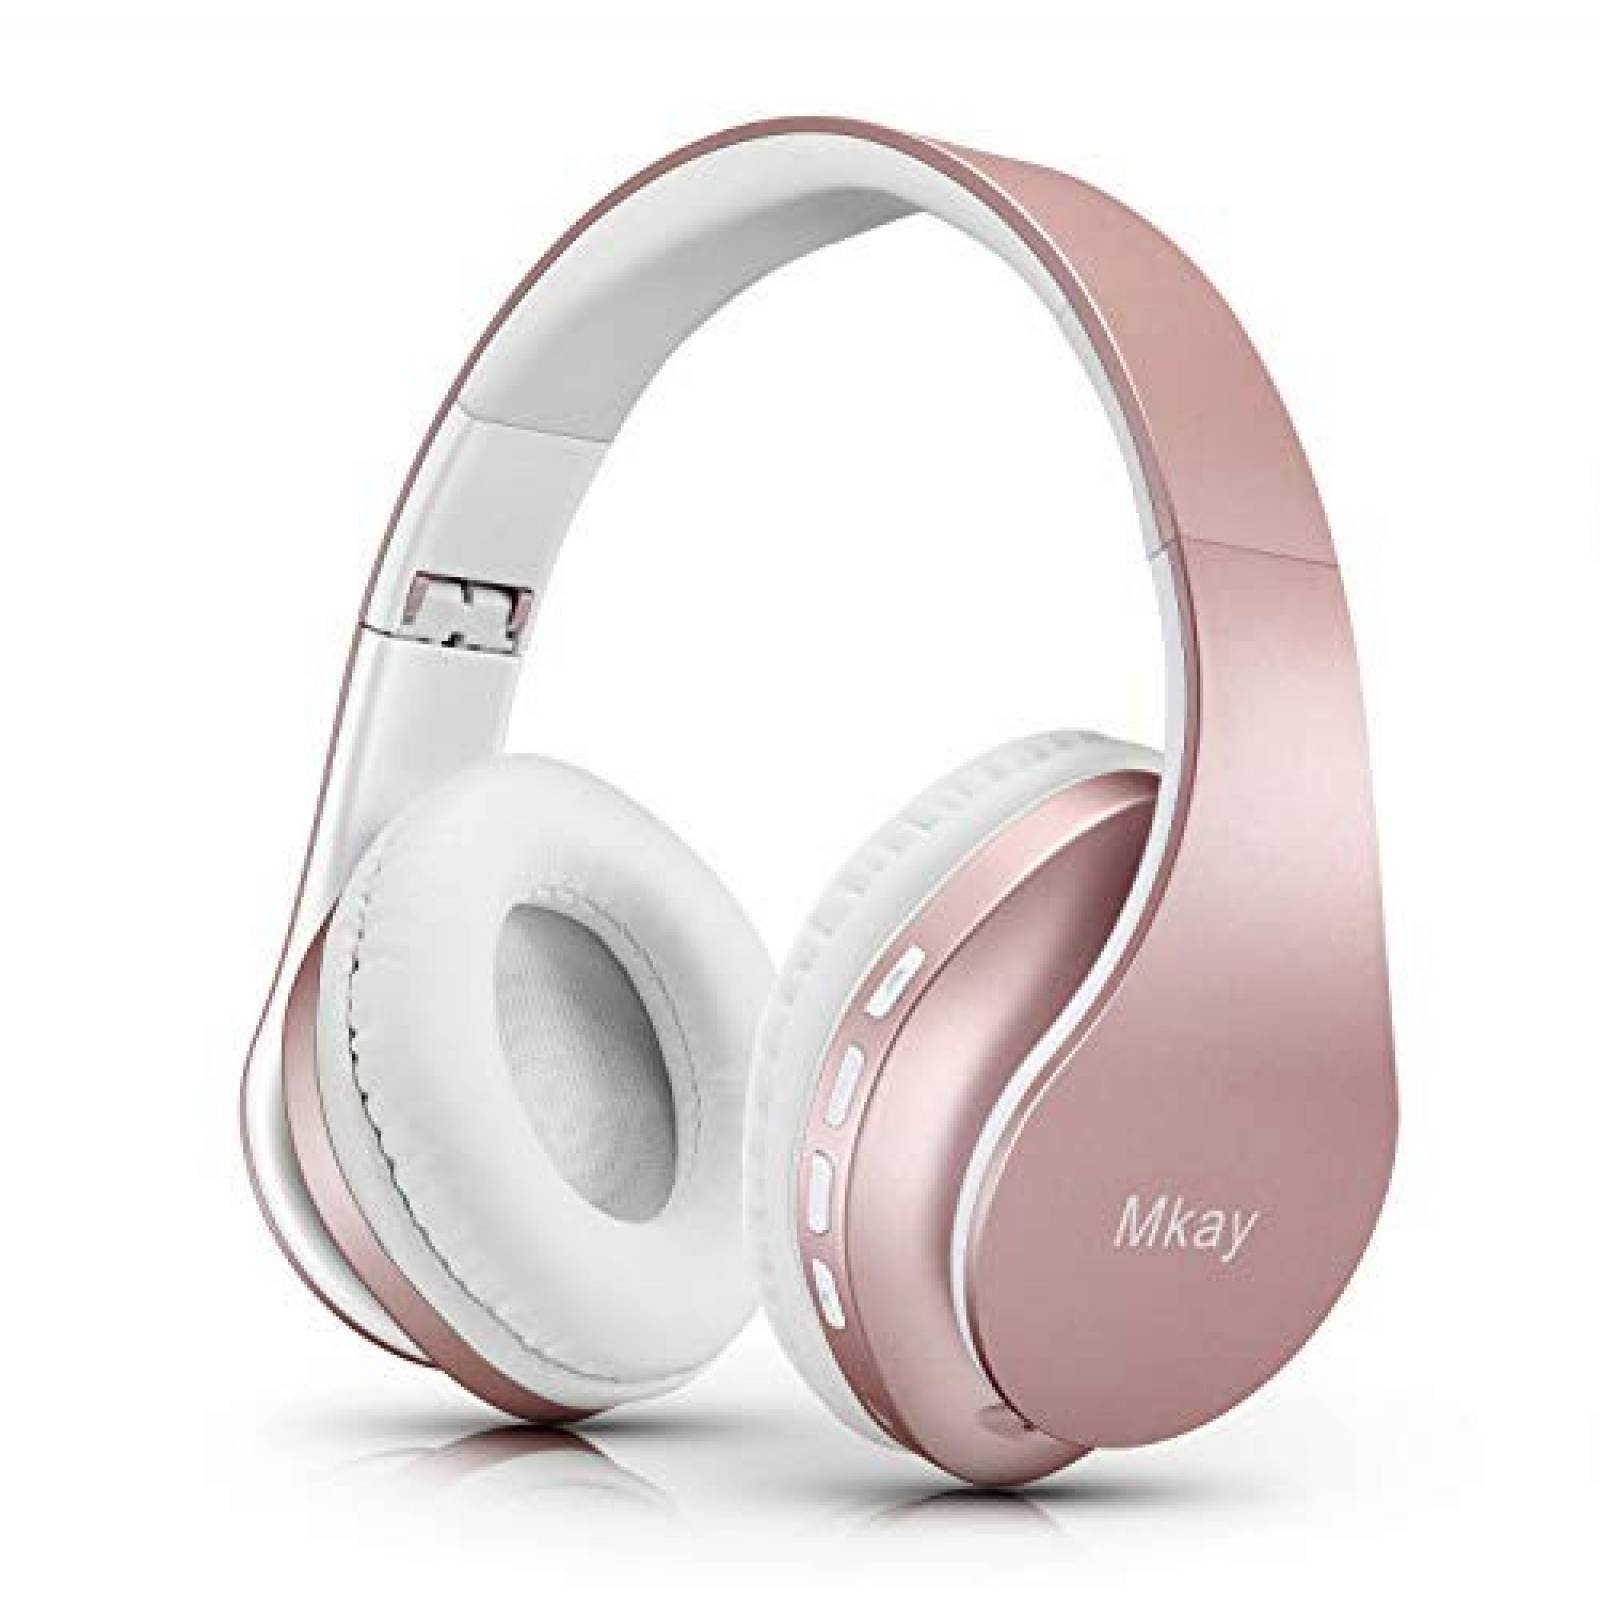 Audífonos inalámbricos MKay plegables y ligeros -Oro rosa